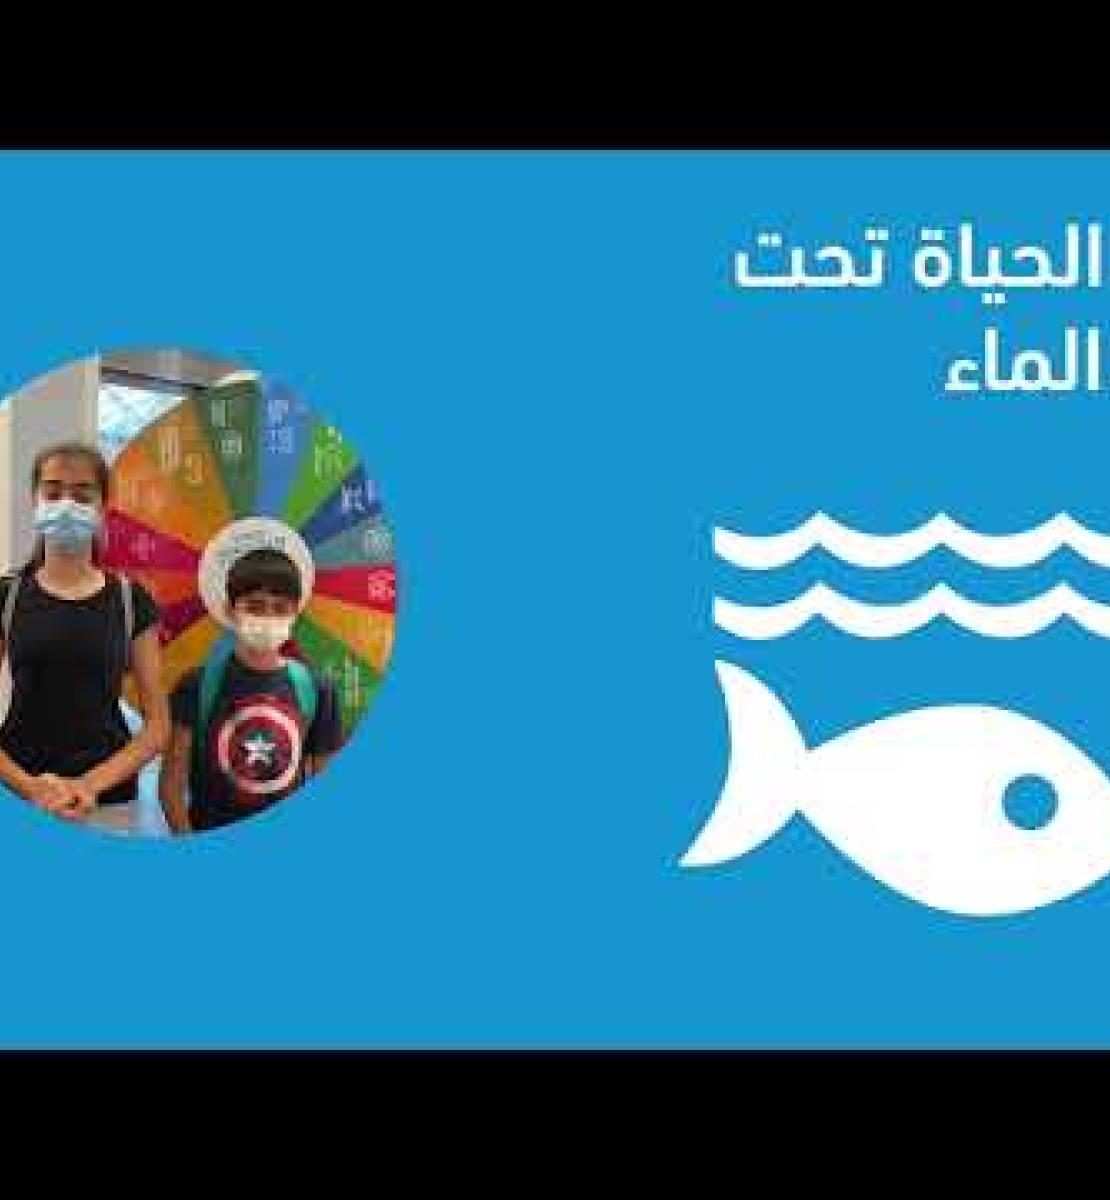 Émirats arabes unis : Sensibiliser les enfants aux ODD et aux moyens d’agir en leur faveur